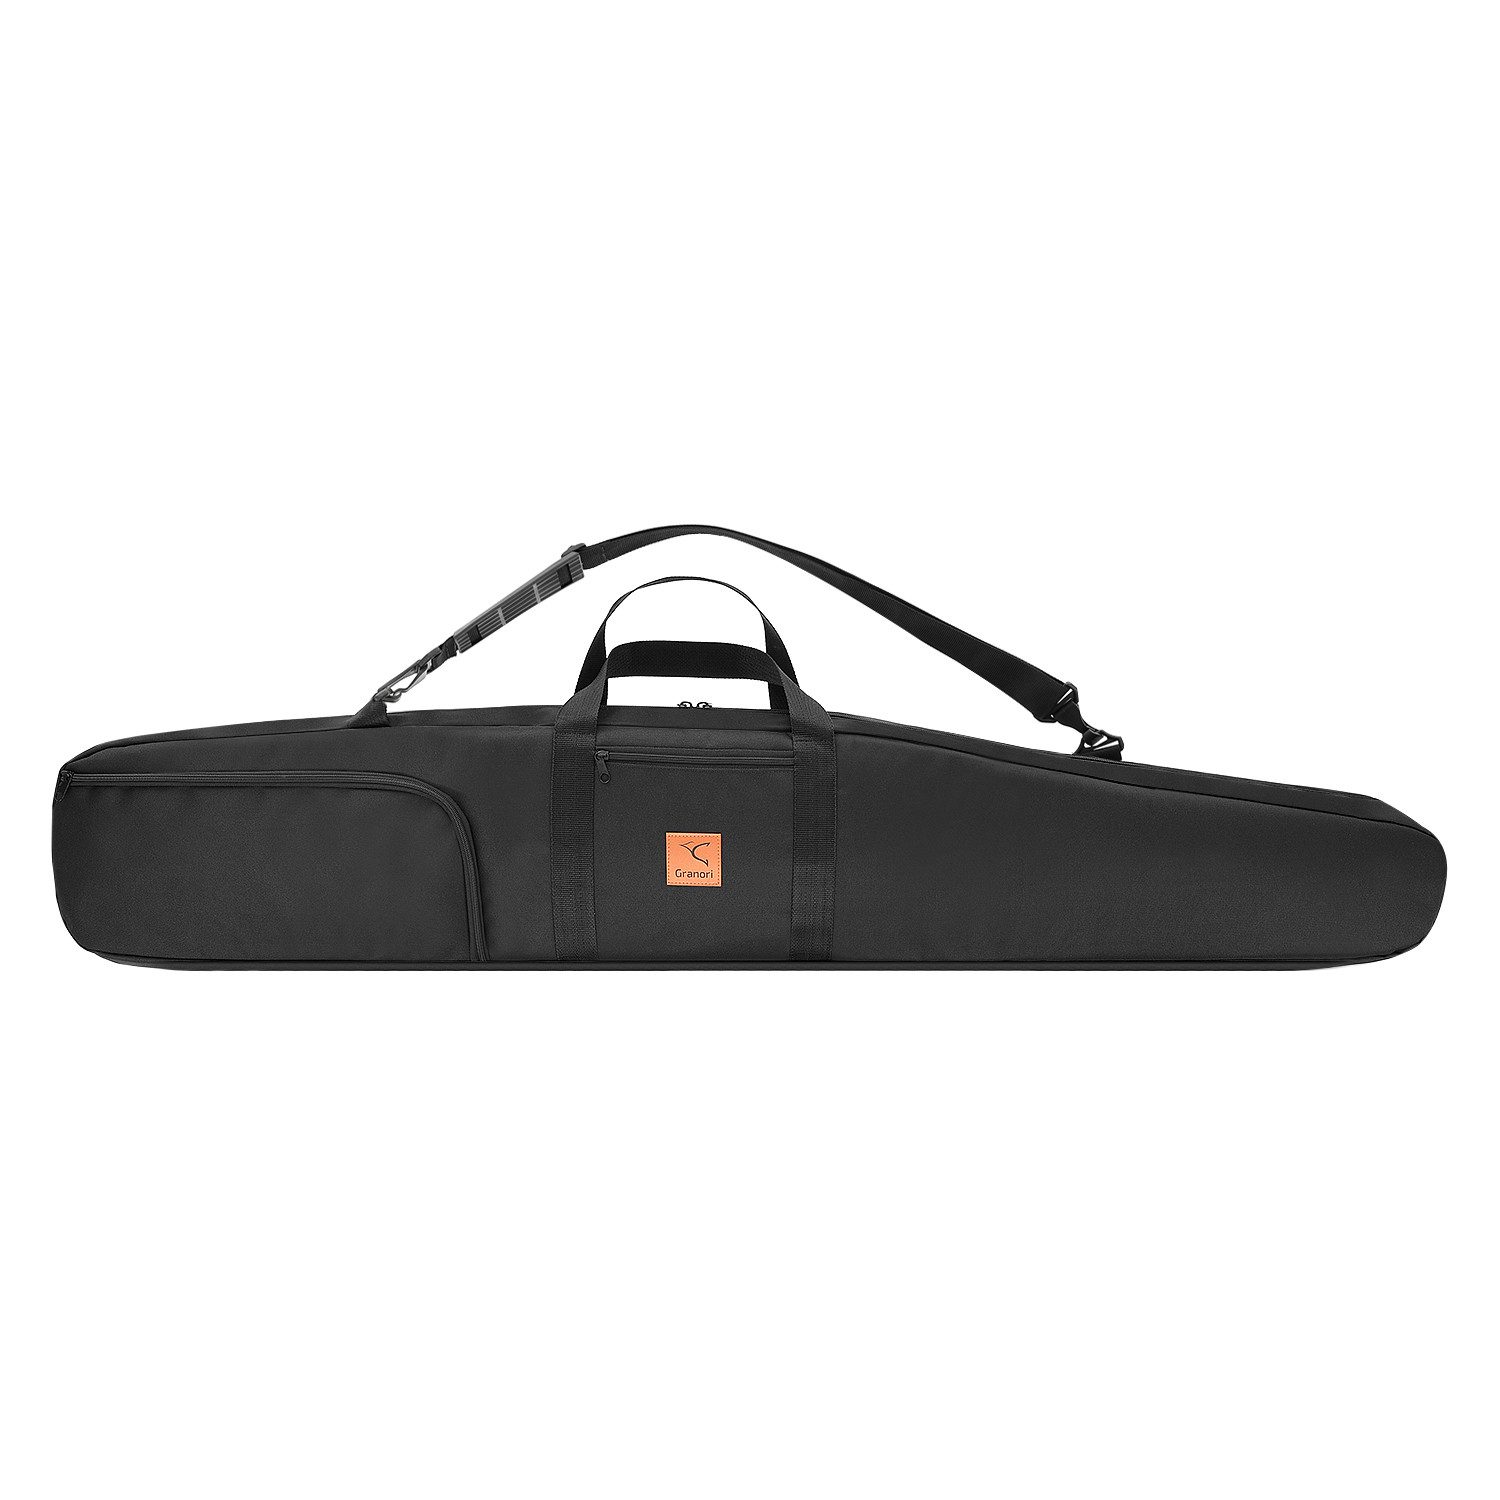 Granori Sporttasche für 2 Langwaffen / Gewehre – Doppelfutteral, Gewehrtasche 130 cm (mit Außentaschen, Tragegriff und verstellbarem Gurt), dick gepolstert, abschließbar und robust